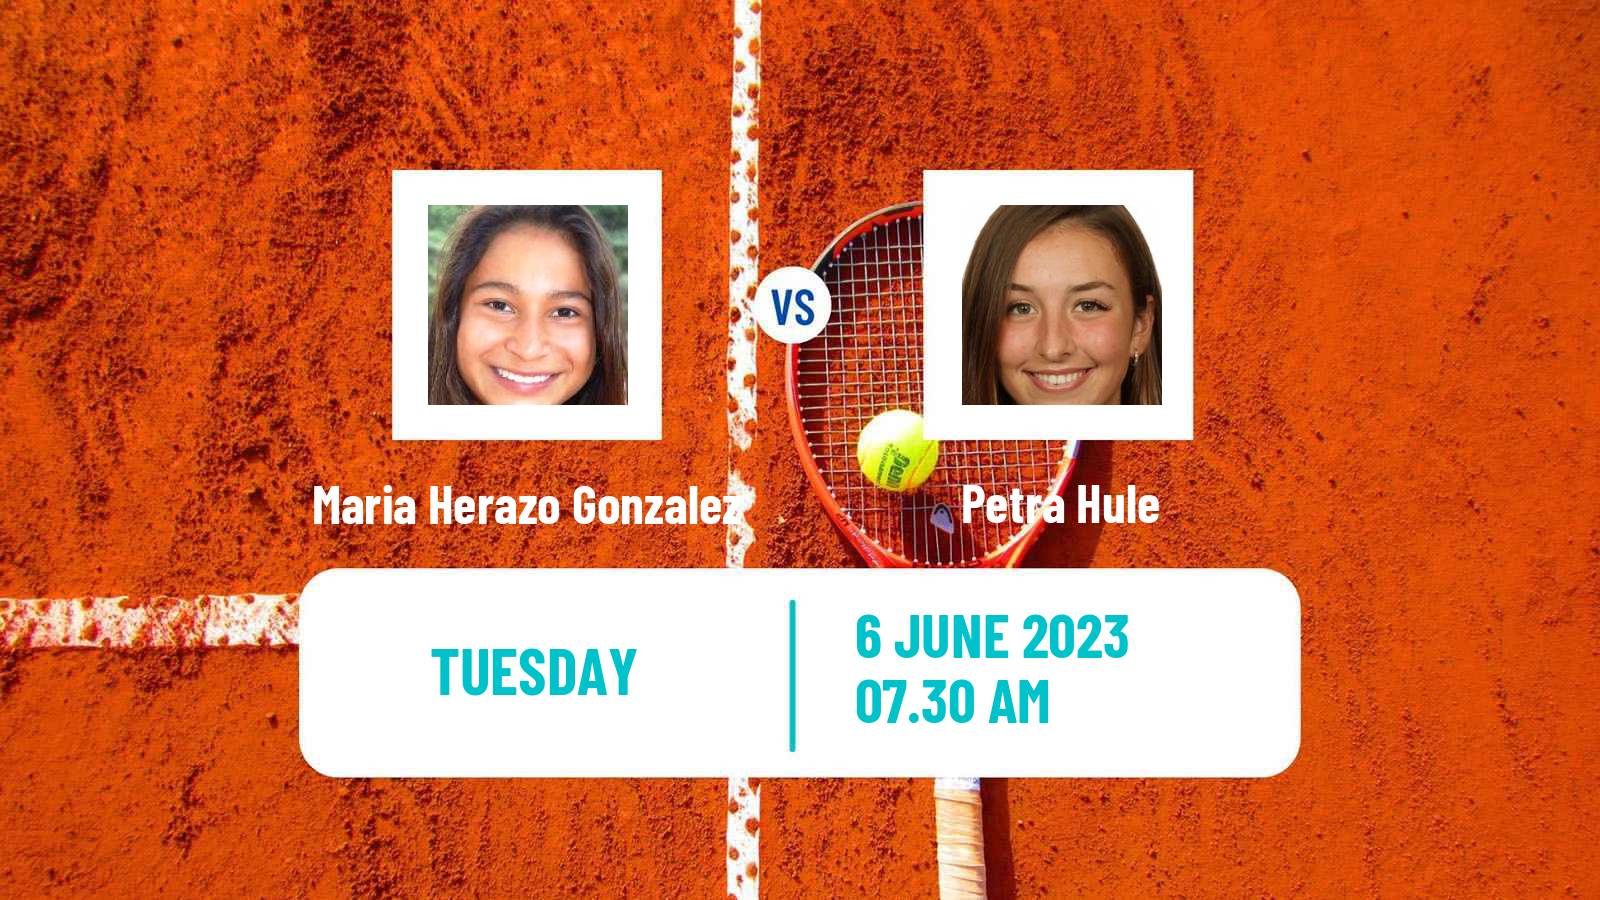 Tennis ITF W25 Setubal Women Maria Herazo Gonzalez - Petra Hule